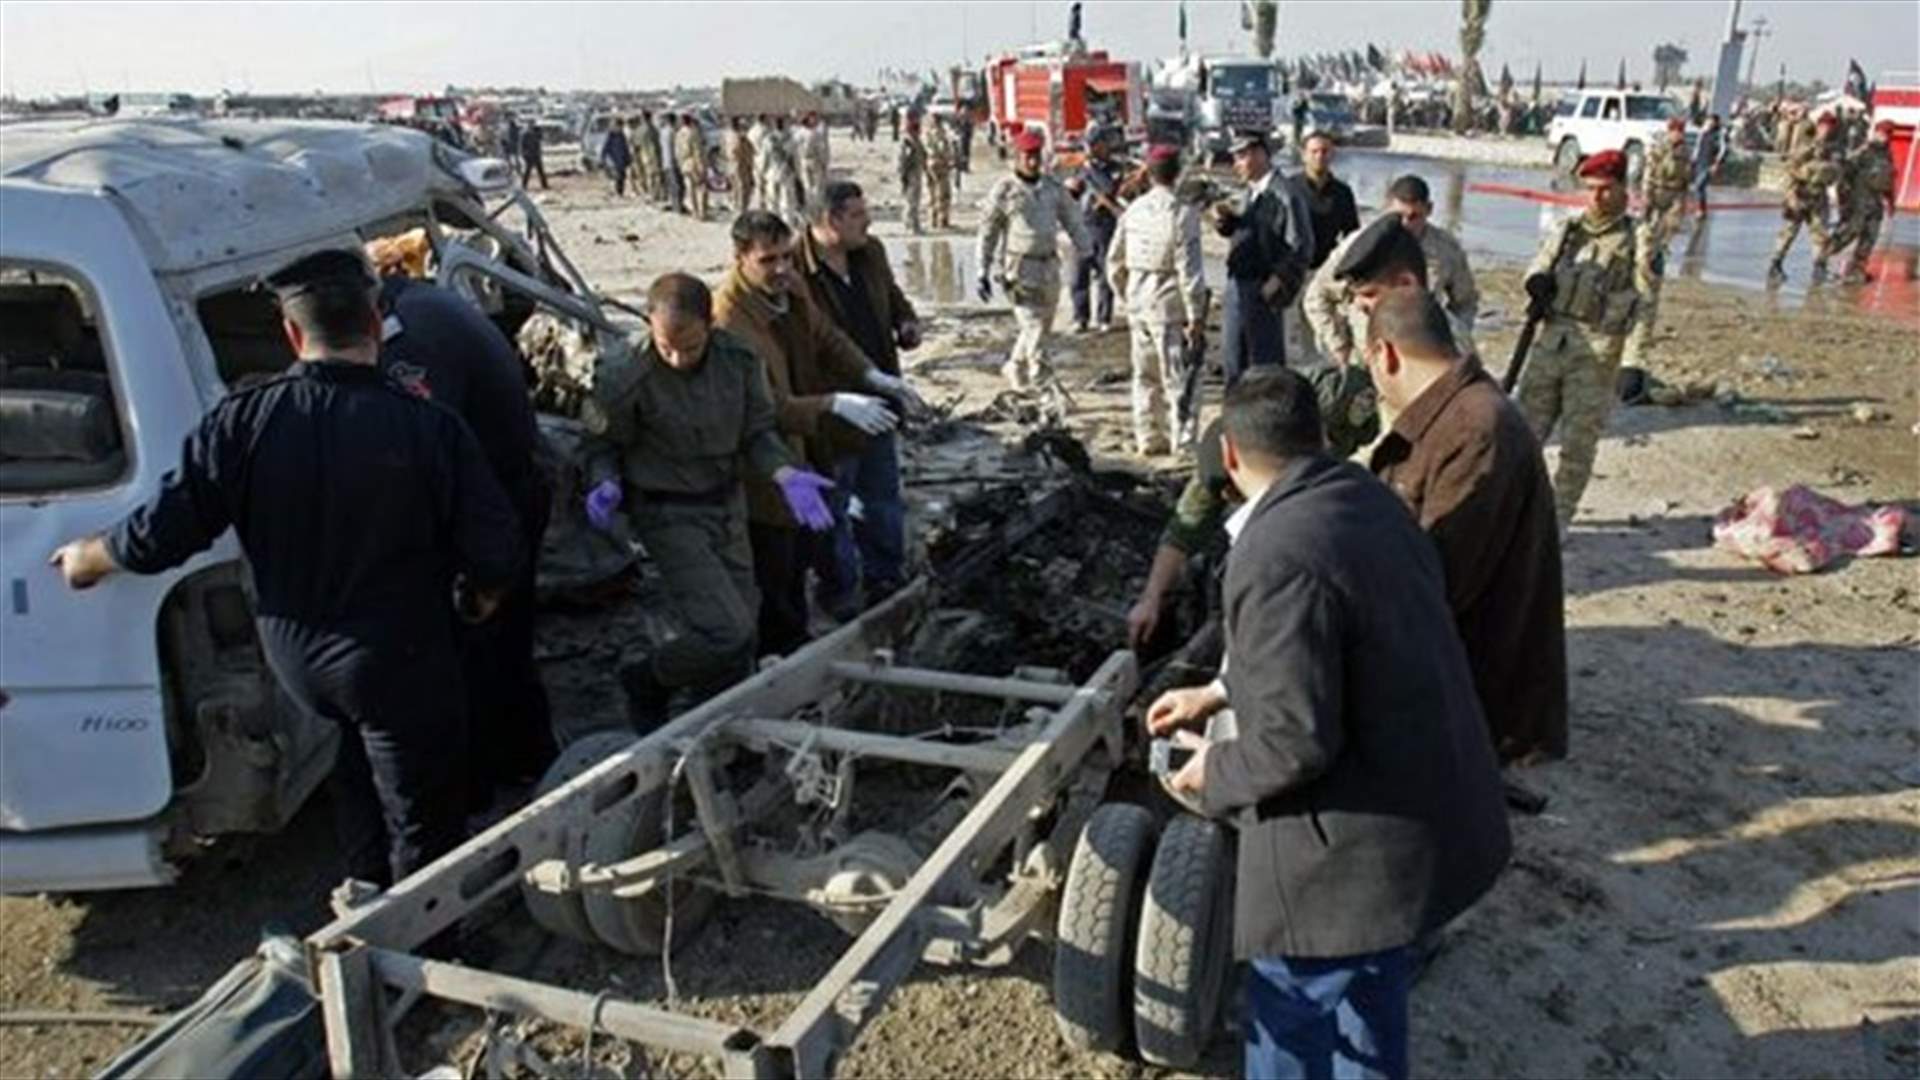 Bus bombing kills 8 people near Iraqi city of Karbala